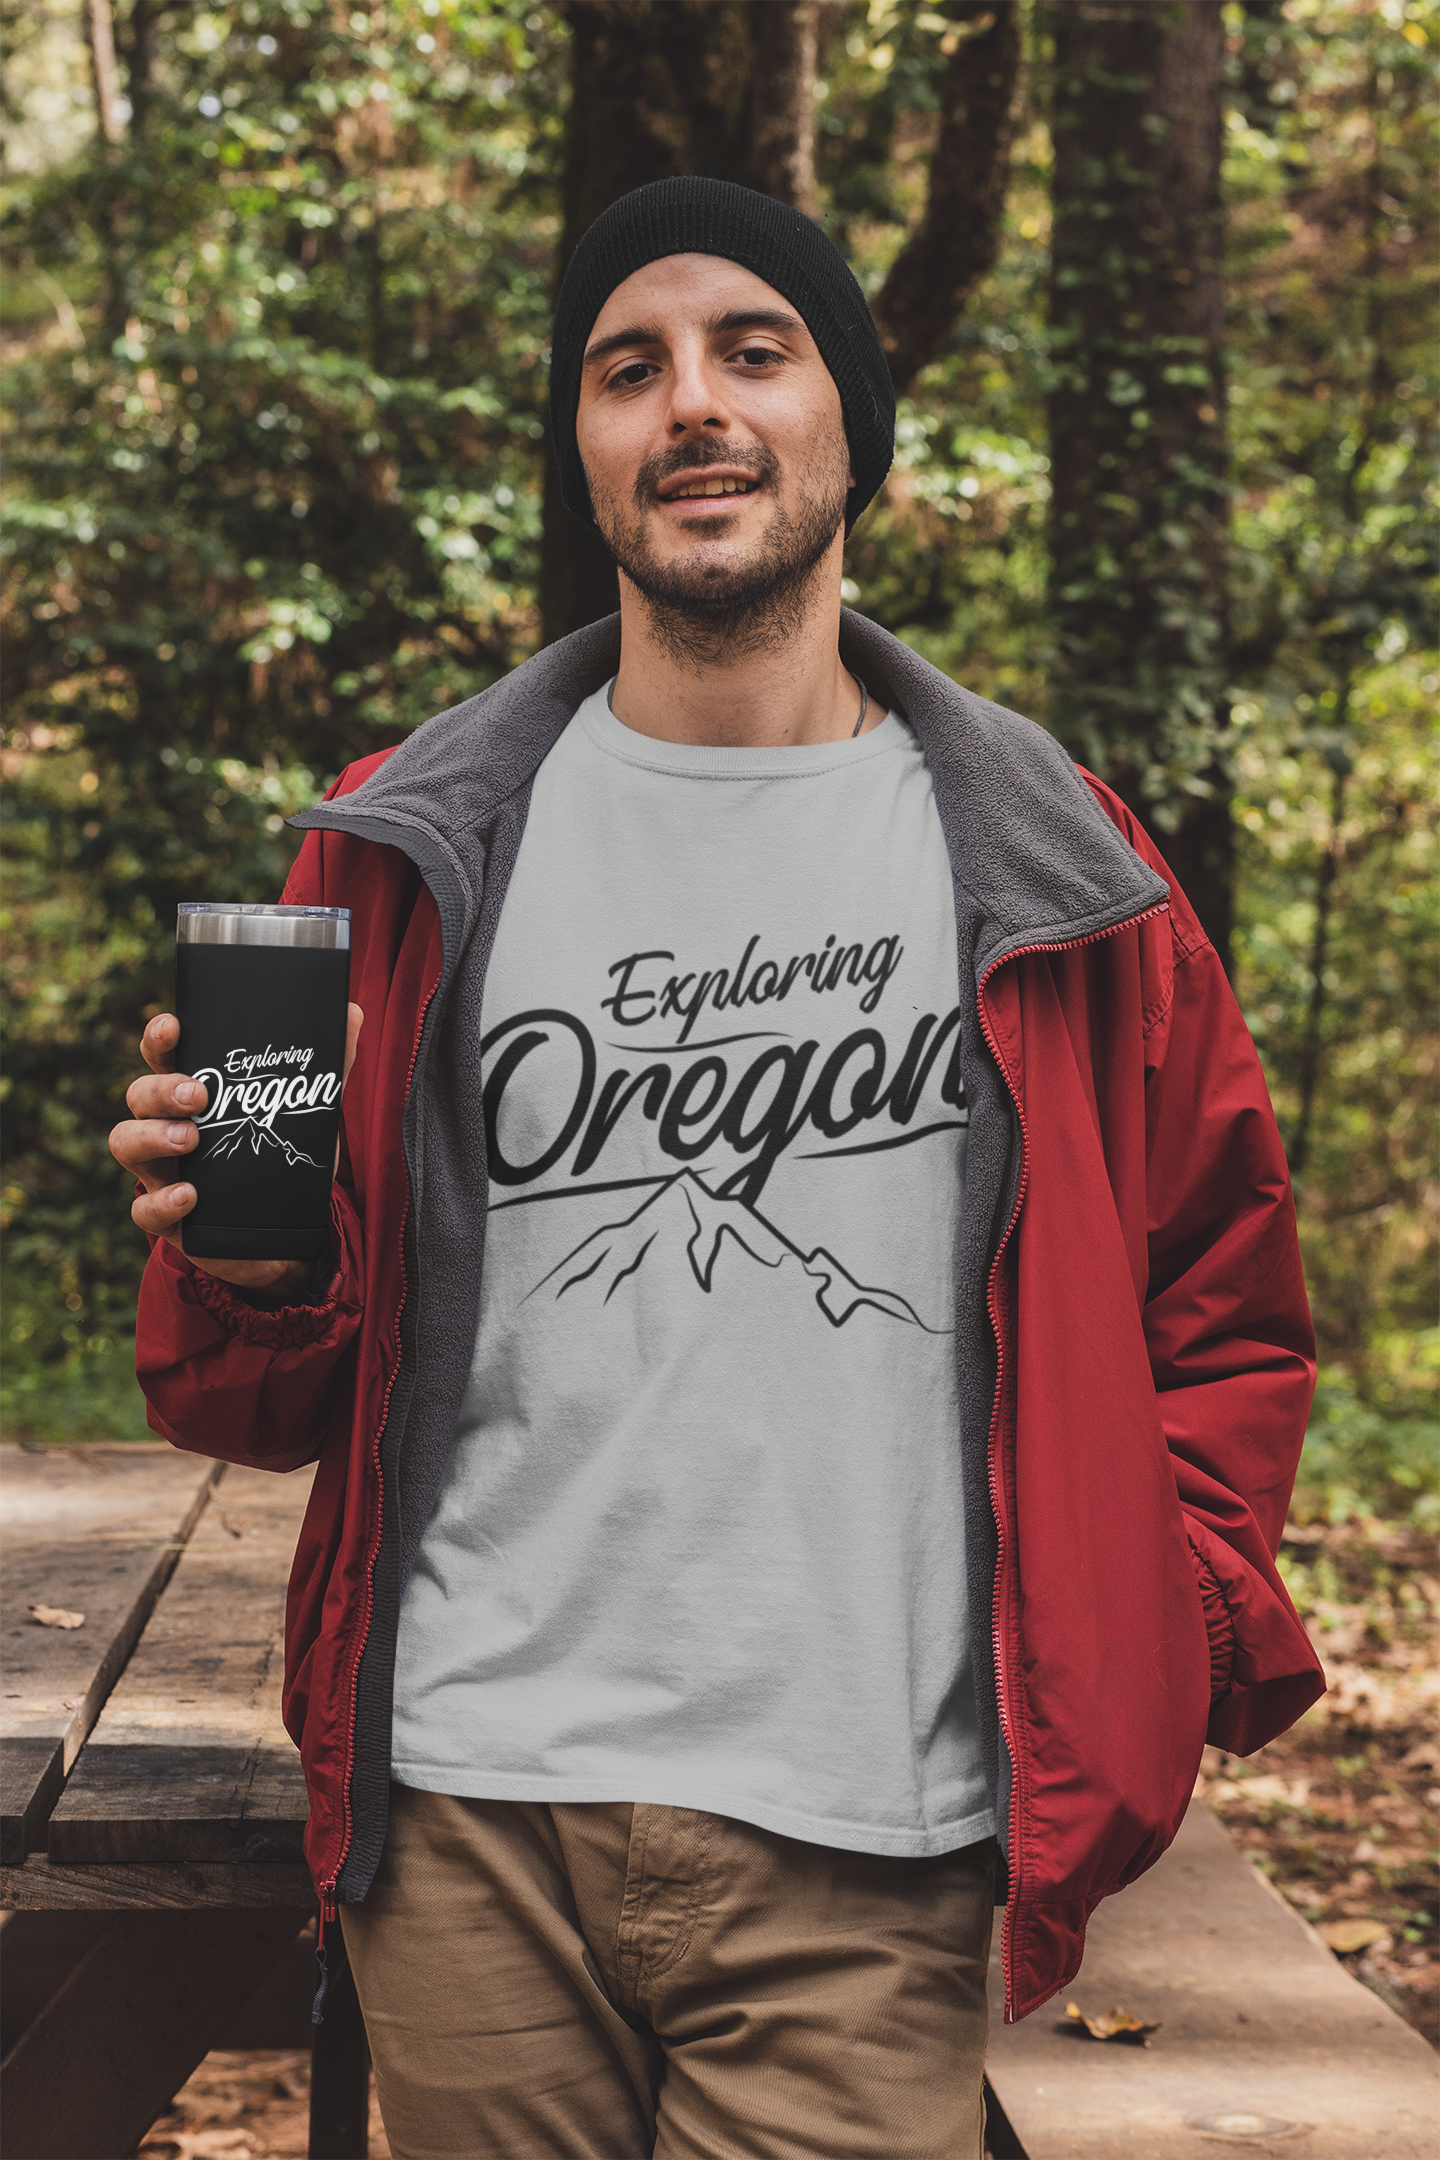 Exploring Oregon - T Shirt